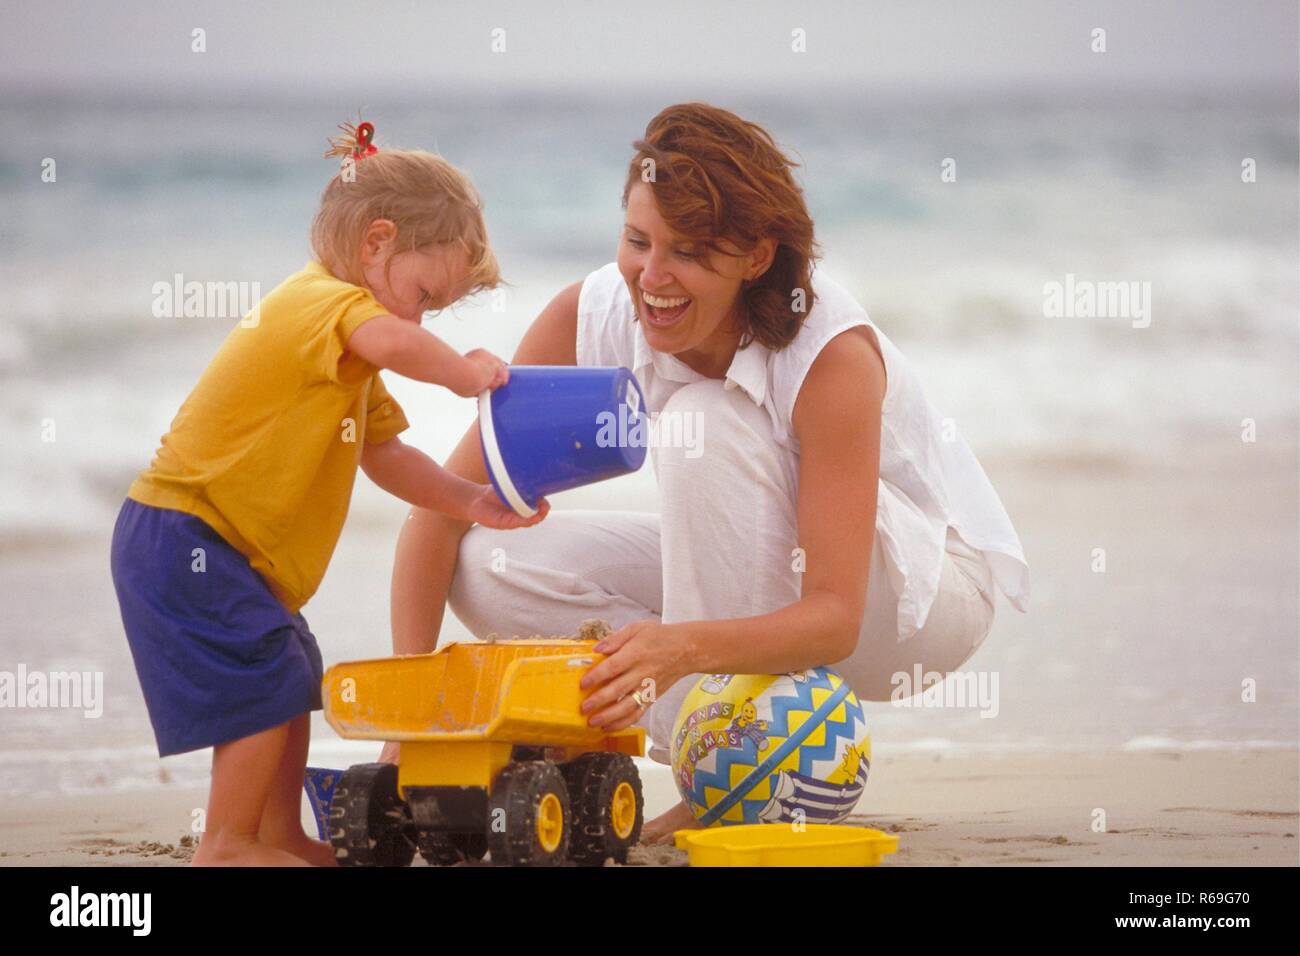 Ganzfigur, Outdoor, weiss gekleidete Frau spielt mit ihrer 2-jaehrigen blondn Tochter Mit einem blauen Eimer und gelbem Spielzeuglaster am Strand Foto Stock